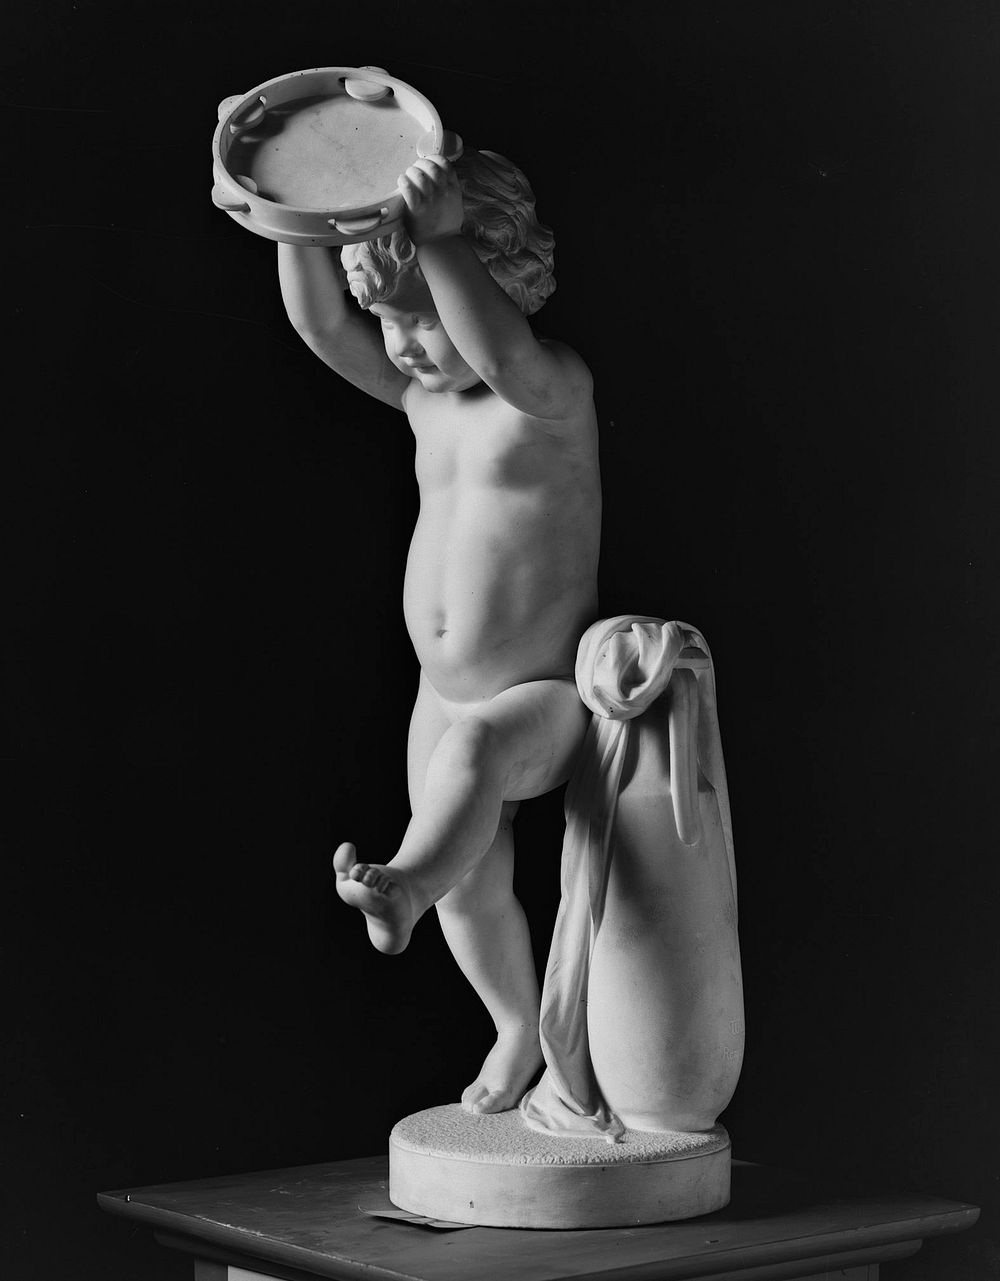 Tanssiva poika tampuriini kädessään, 1875 - 1876